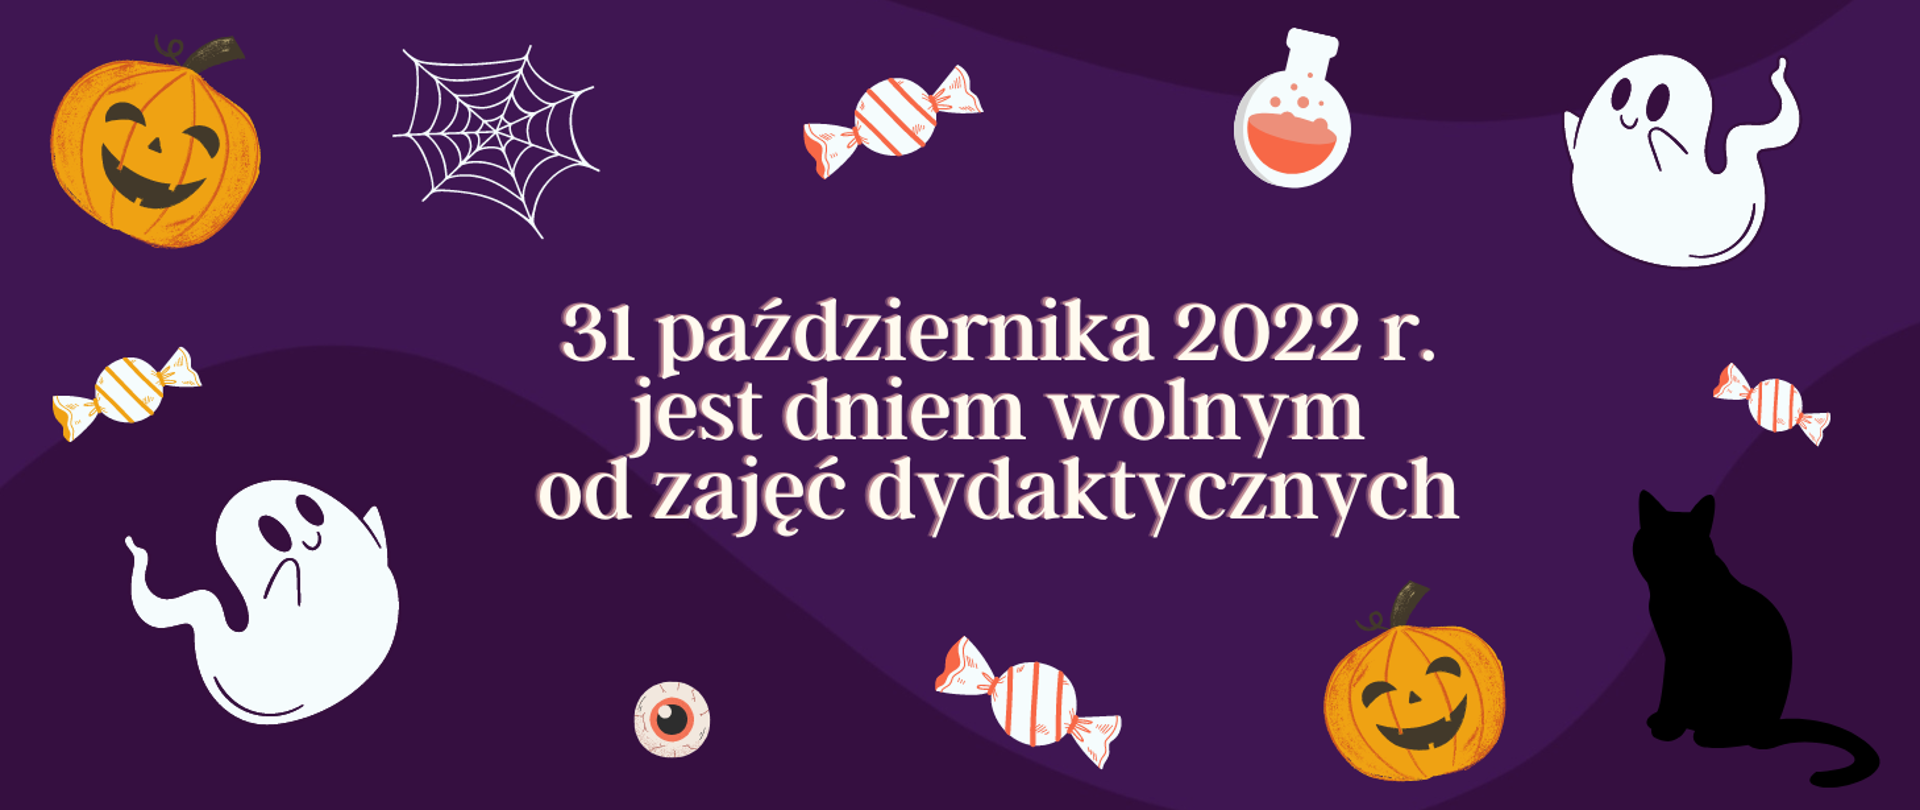 Na fioletowym tle w centralnej części obrazka biały napis: "31 października 2022 r. jest dniem wolnym od zajęć dydaktycznych". Dookoła napisu kolorowe halloweenowe obrazki typu: białe duszki, pomarańczowe dynie, cukierki, czarny cień kota, pajęczyna.